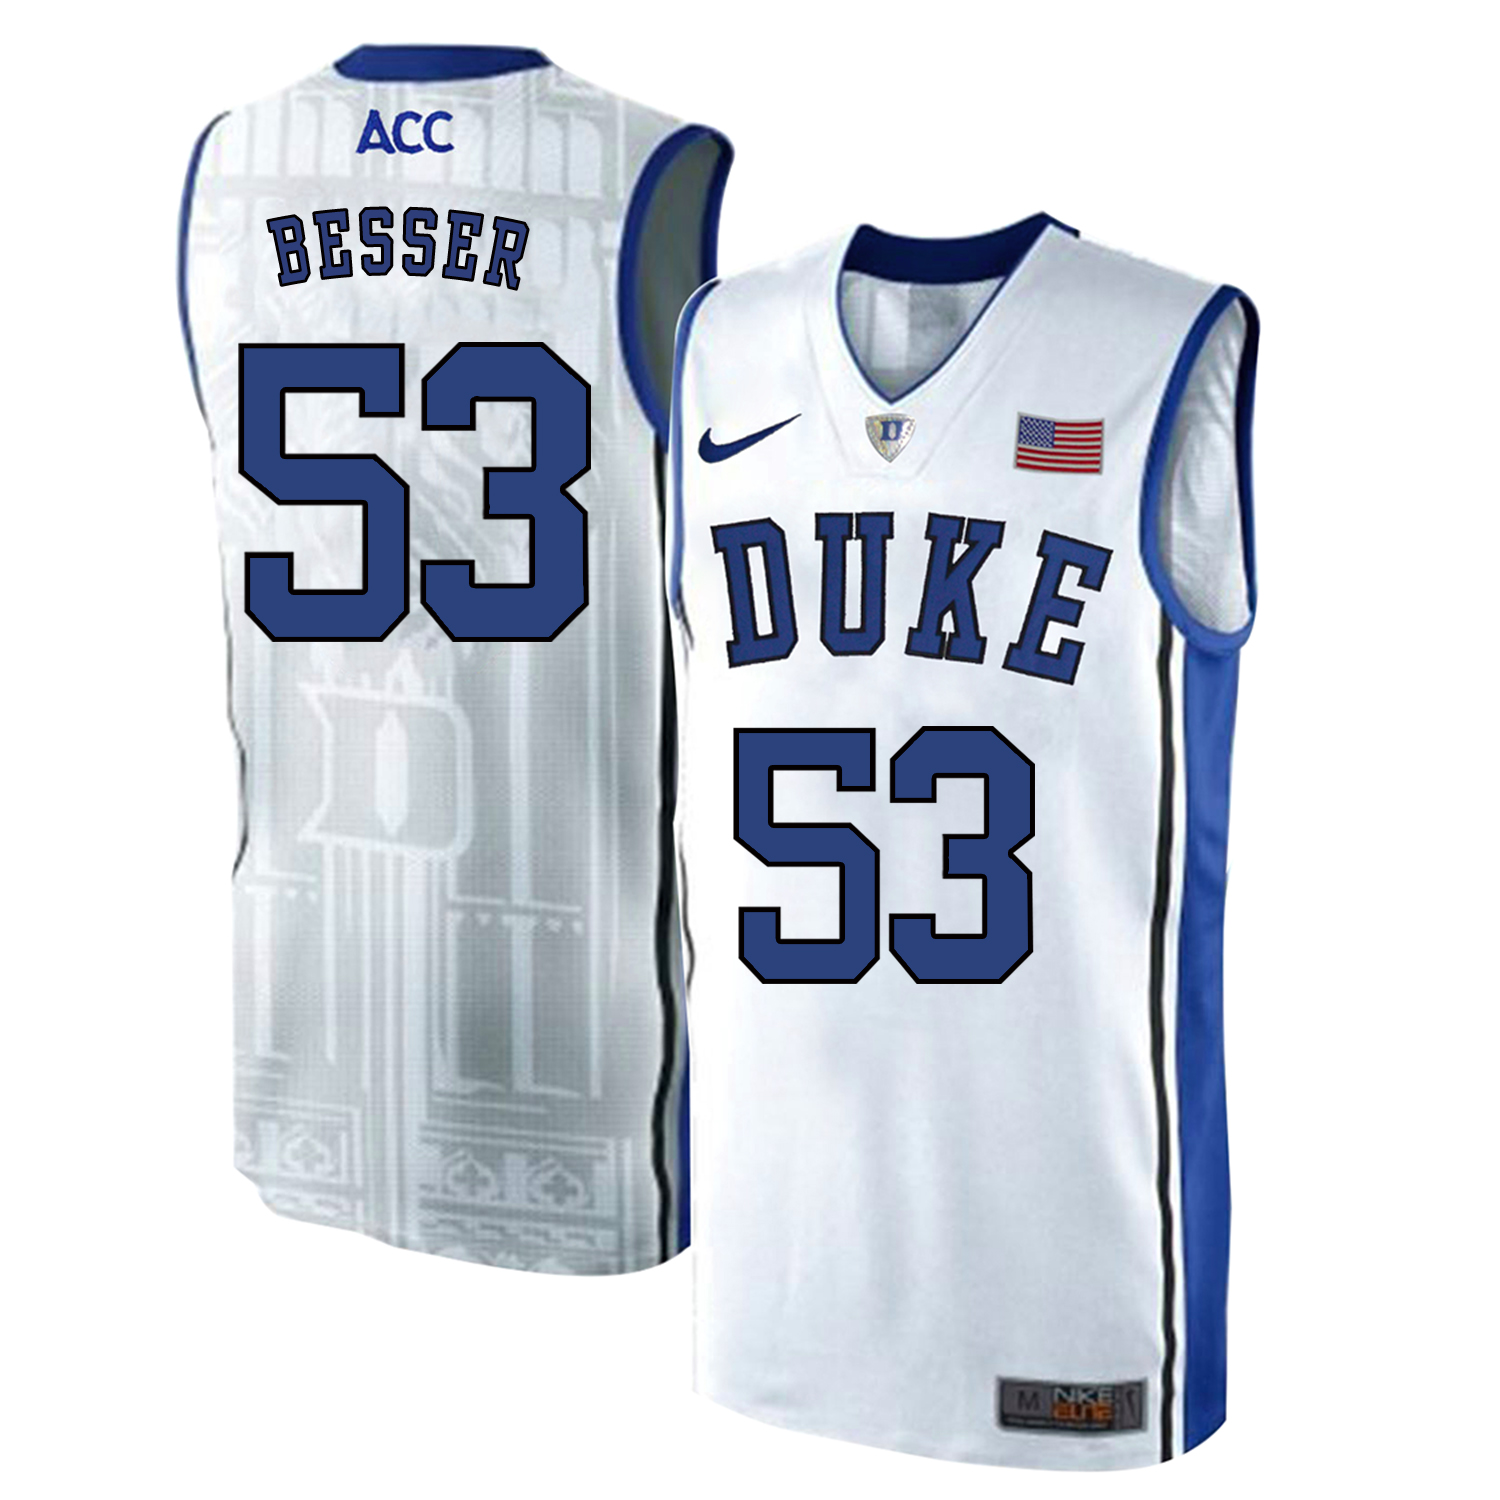 Duke Blue Devils 53 Brennan Besser White Elite Nike College Basketball Jersey